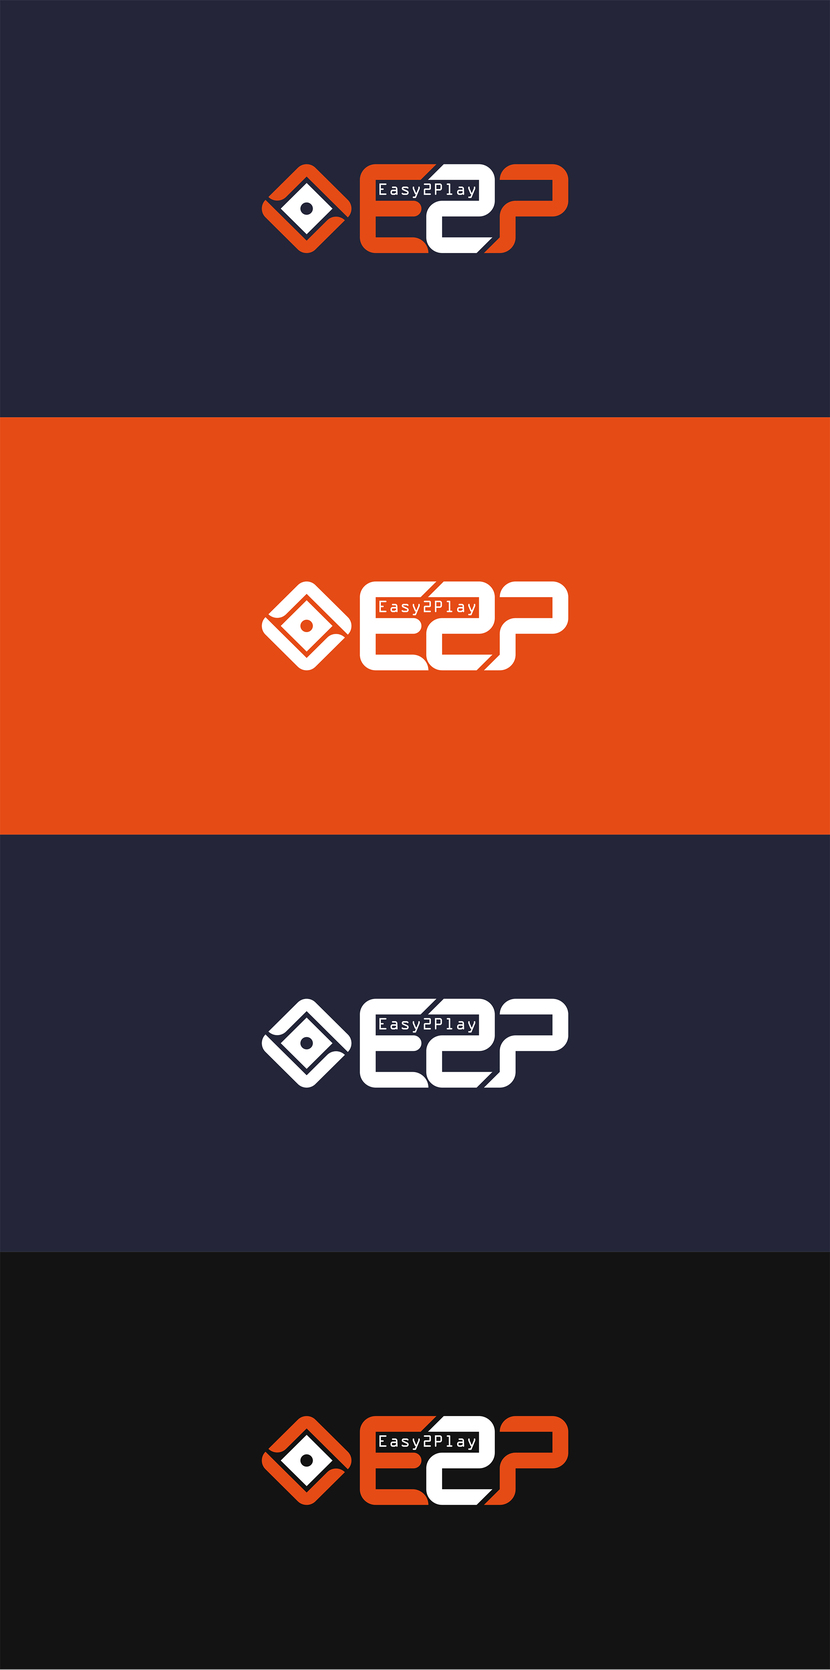 + - Логотип маркетплейса для продажи внутриигровой валюты, предметов и услуг Easy2Play